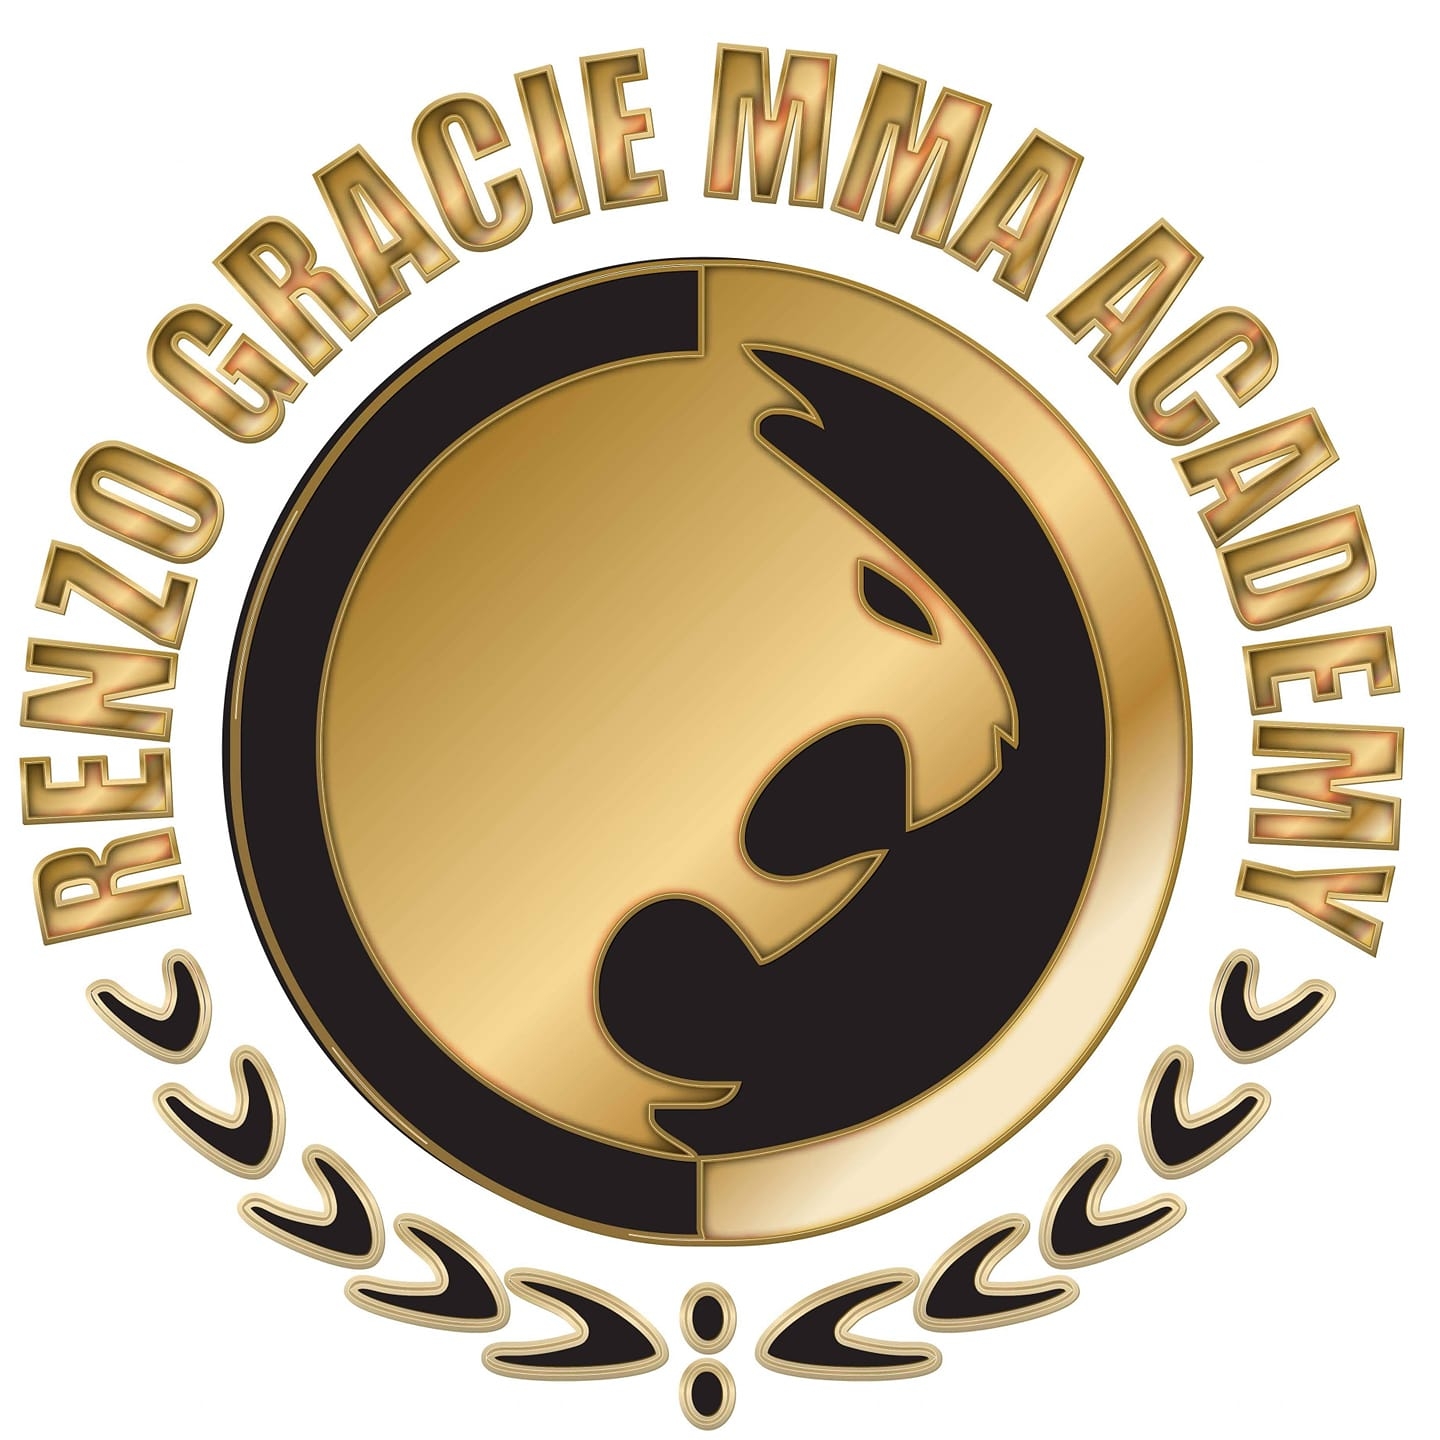 Renzo Gracie MMA Academy